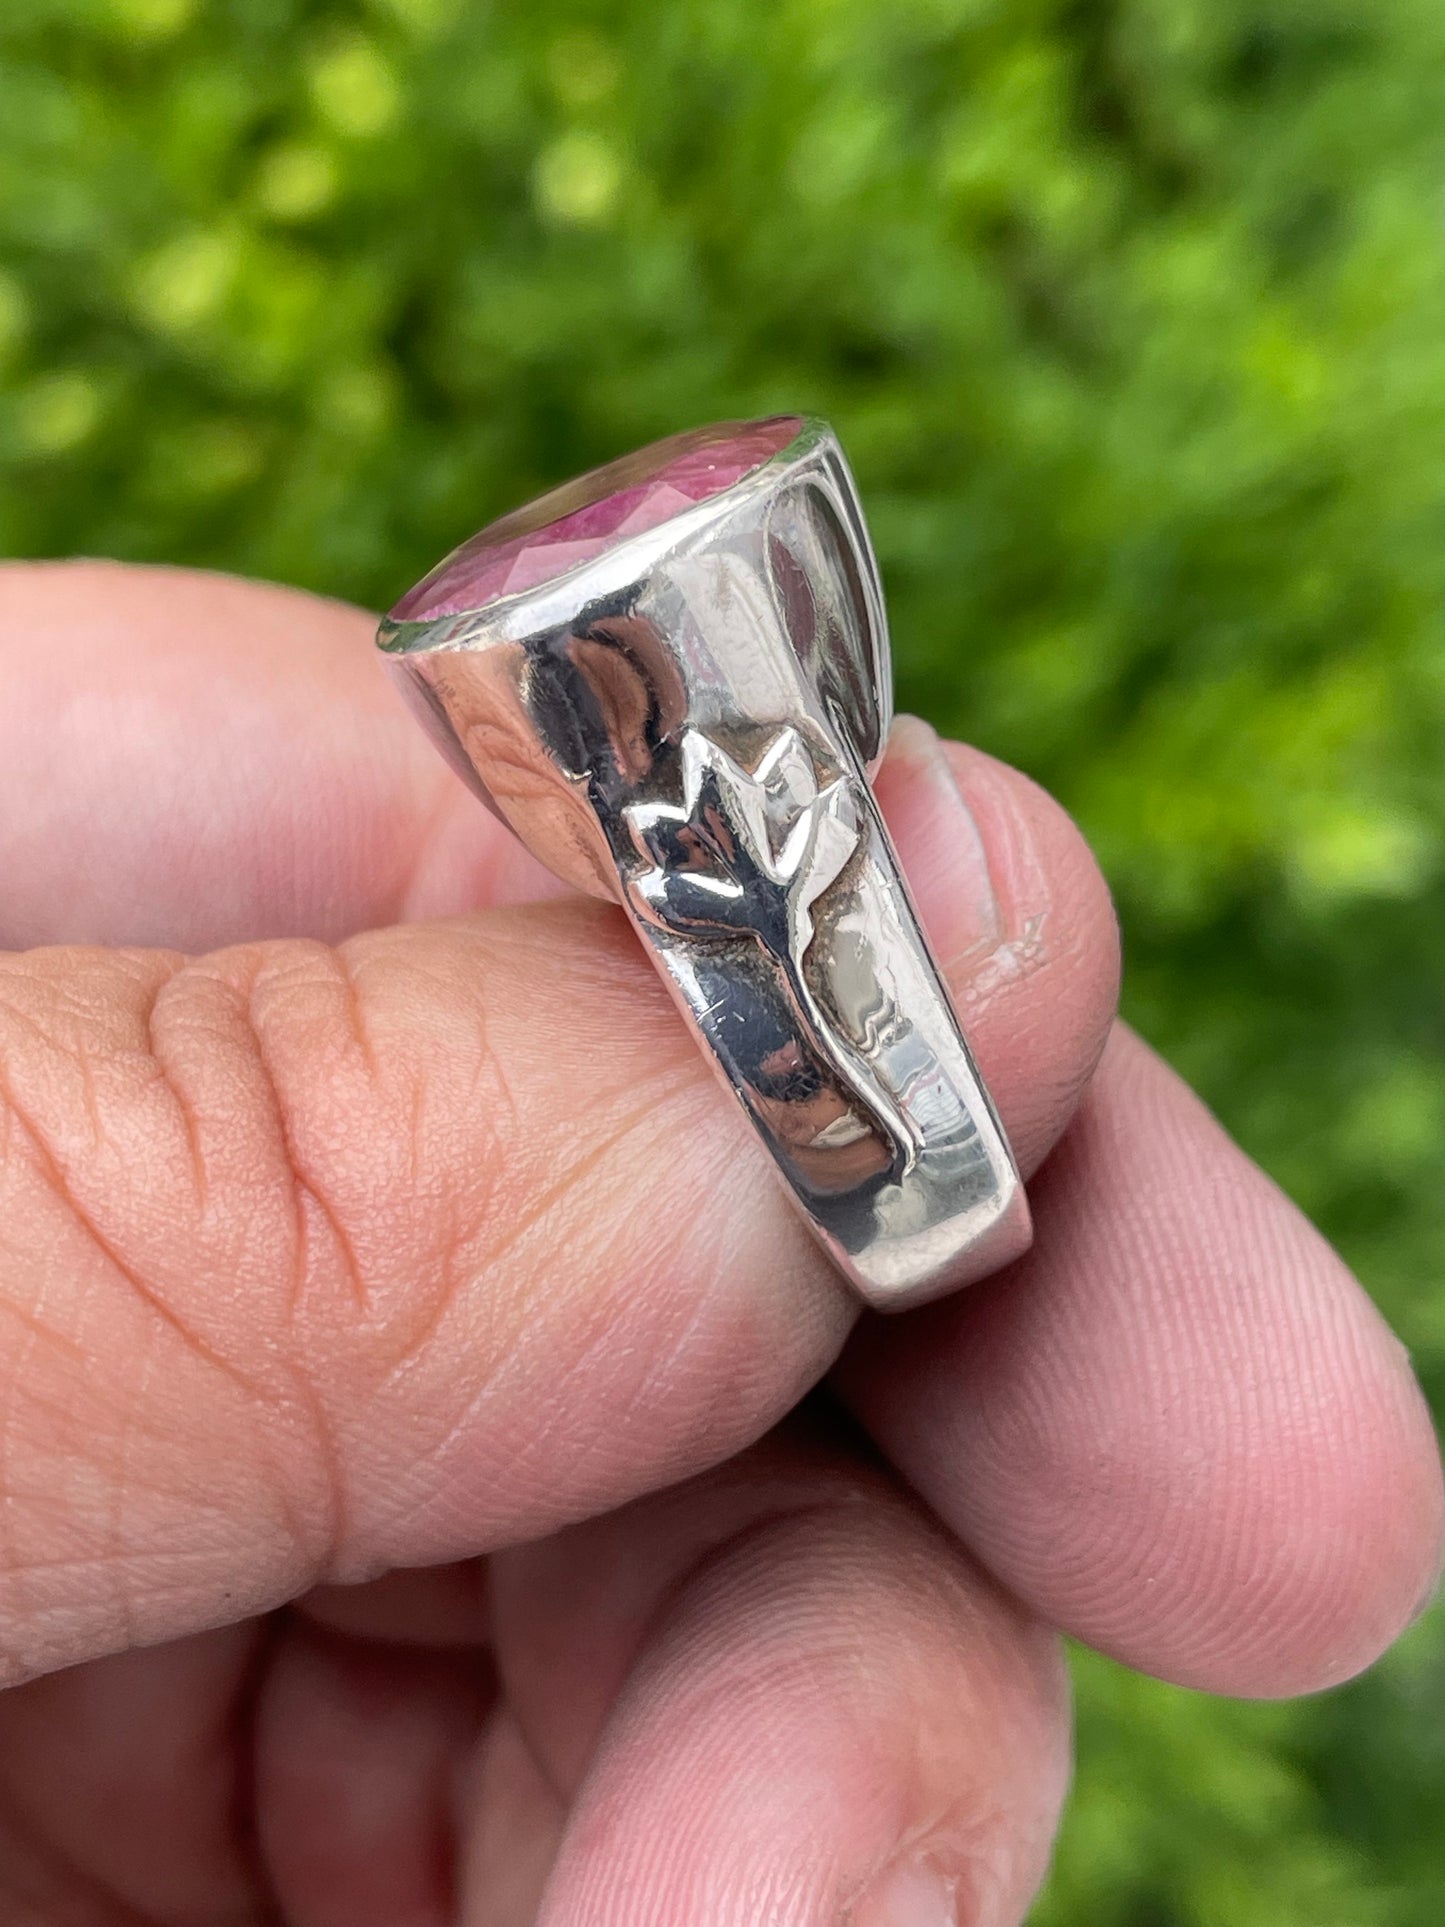 Designer Satya Genuine Ruby 925 Sterling Silver Lotus Ring sz 7